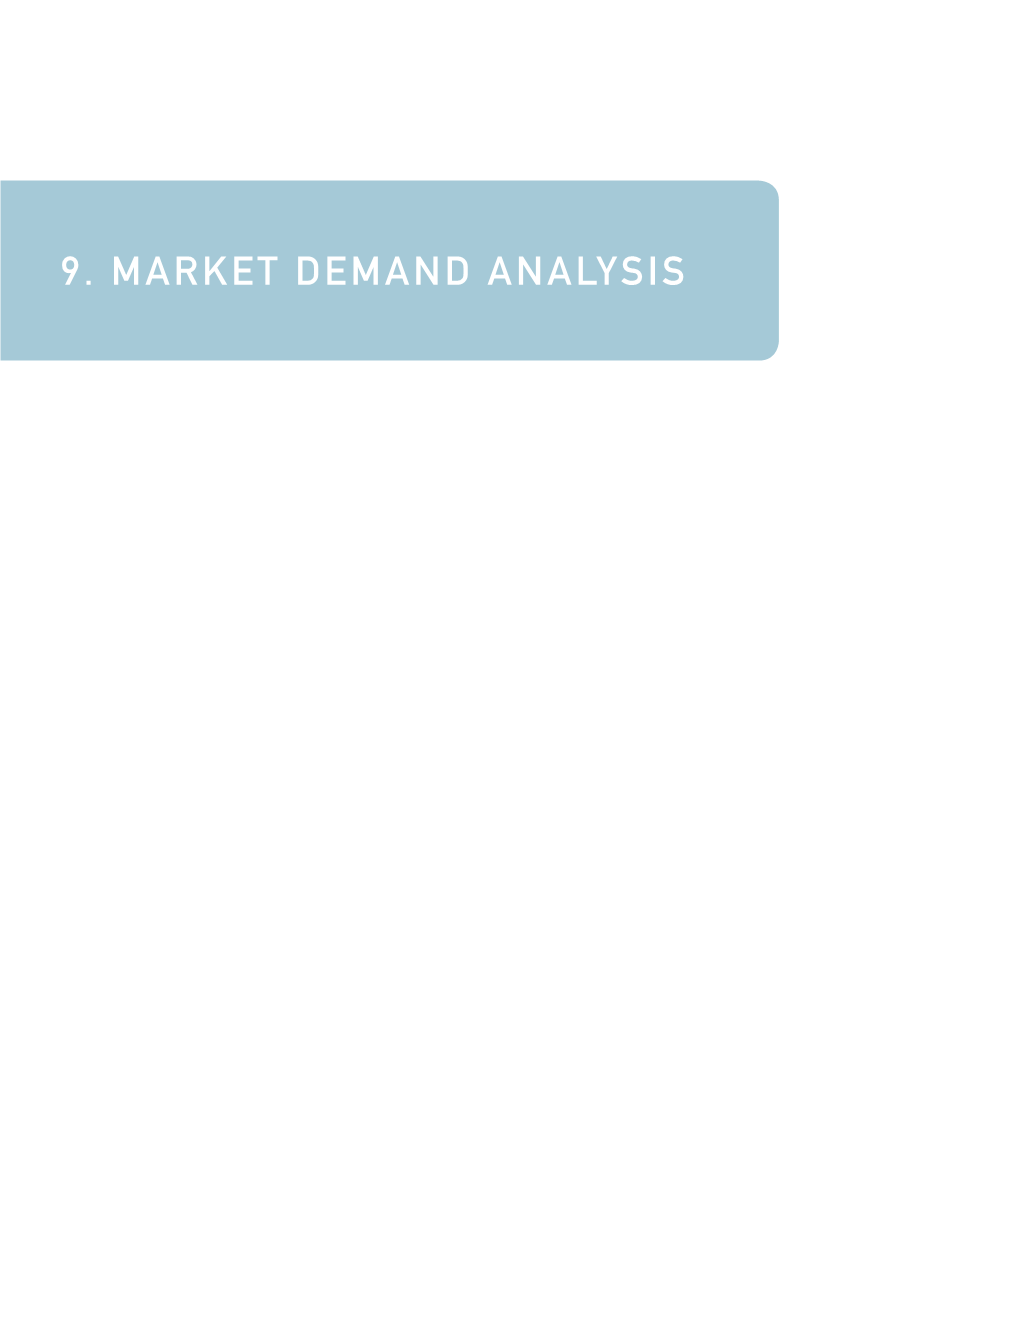 9. Market Demand Analysis Market Demand Analysis